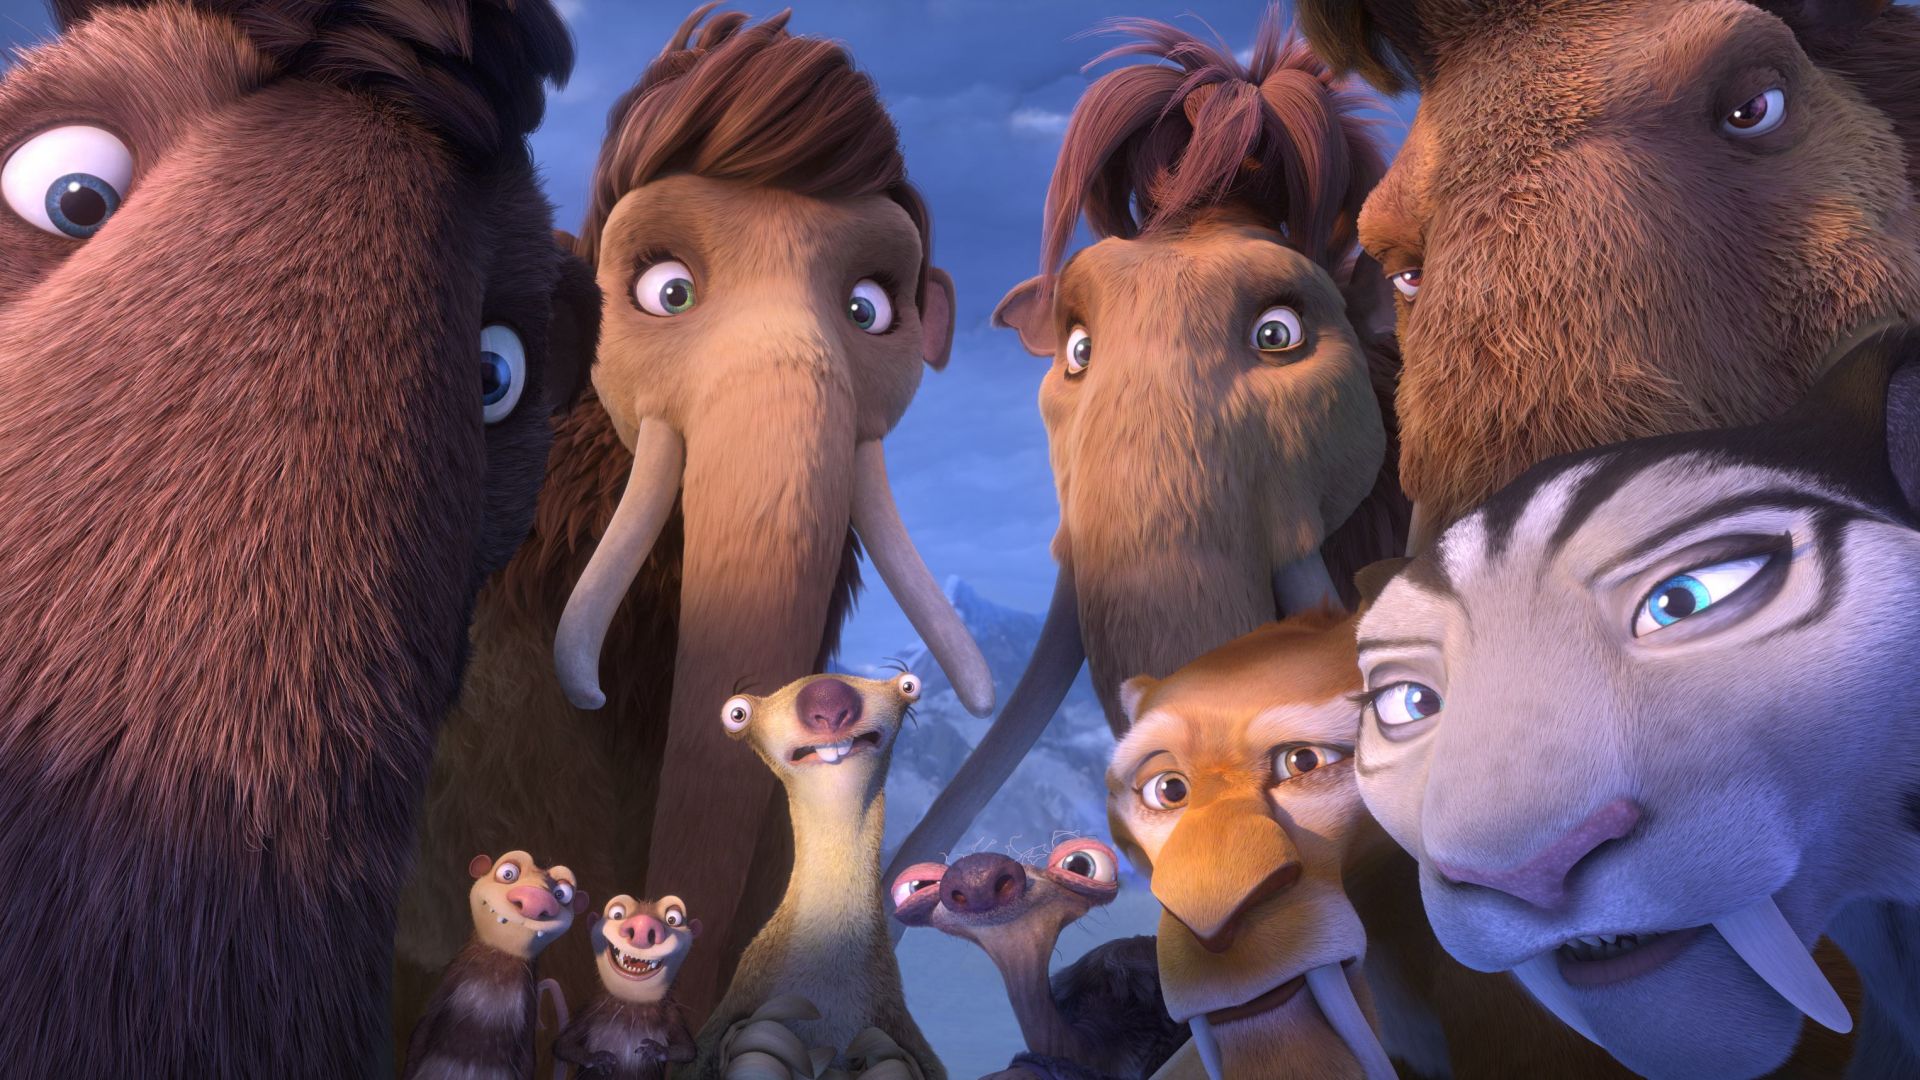 Ледниковый период 5: Столкновение неизбежно, мамонты, лучшие мультфильмы 2016, Ice Age 5: Collision Course, mammoths, best animations of 2016 (horizontal)